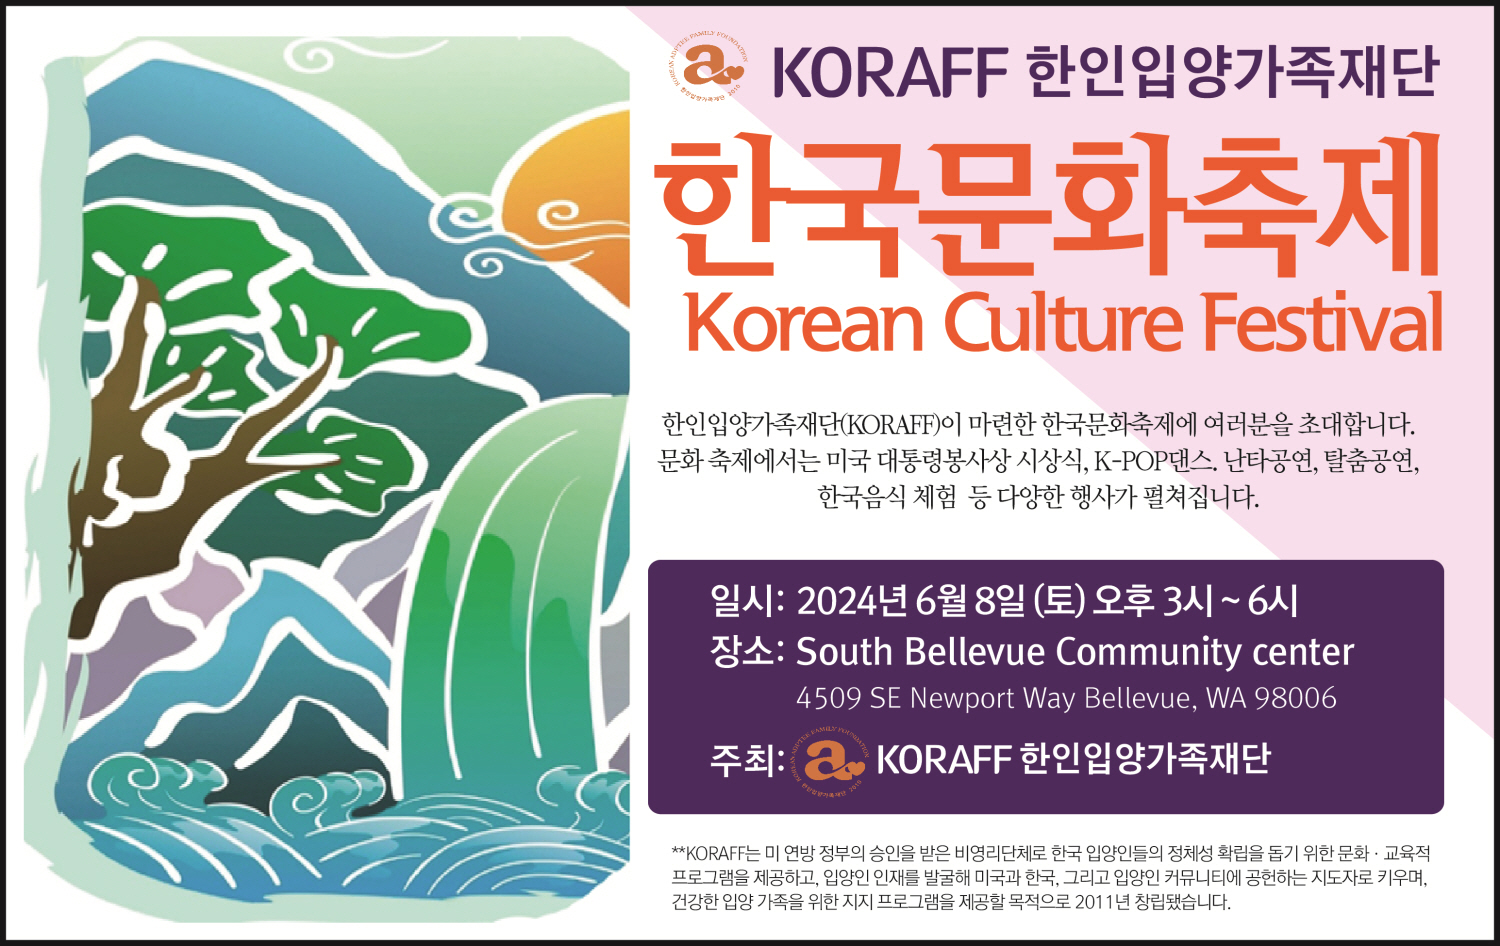 한인입양가족재단(KORAFF) 한국문화축제 개최한다